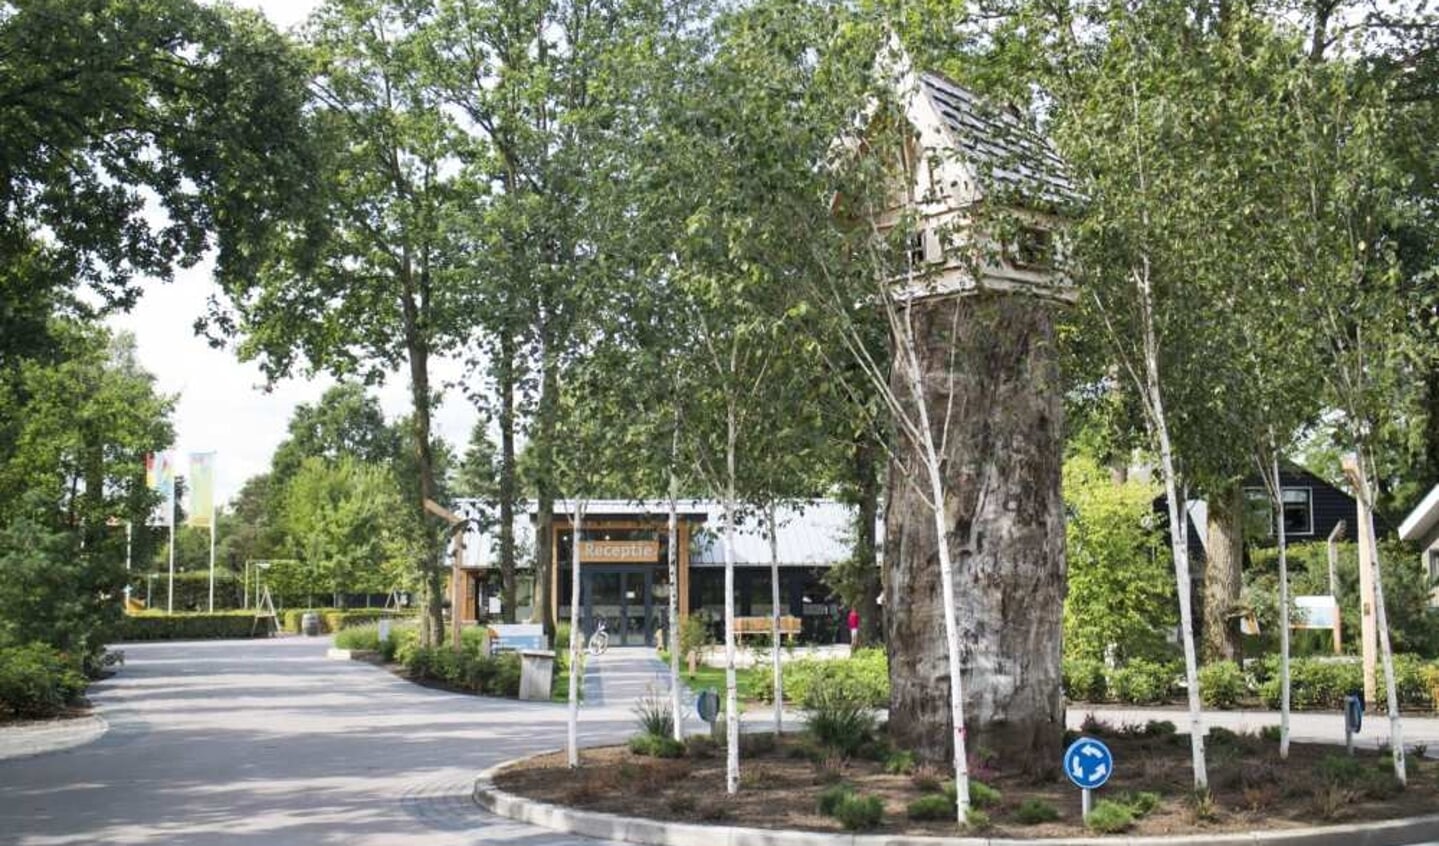 De entree van vakantiepark De Wije Werelt in Otterlo.